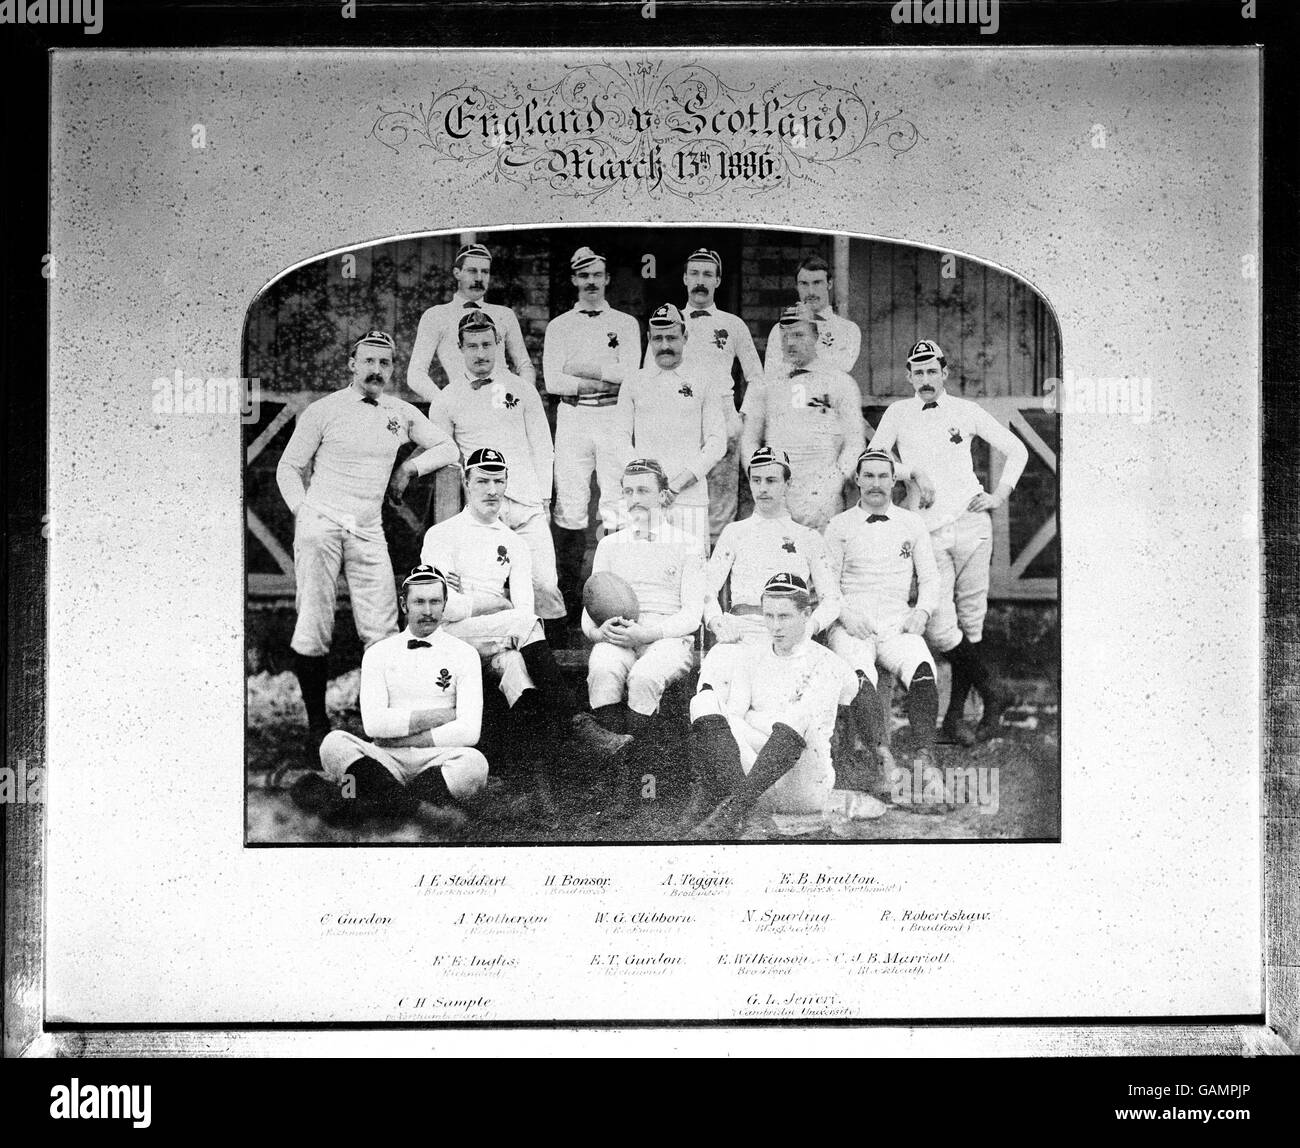 England Team Group. (Hintere Reihe l-r) A. E. Stoddard, Fred Bonsor, A. Teggin, Rev Brutton. (Zweite aus der hinteren Reihe l-r) C. Gurdon, A. Rotheram, W. G. Clibbern, N. Spurling, P. Robertshaw. (Zweiter von der ersten Reihe l-r) R. E. Inglis, E. T. Gurdon, E. Wilkinson, C. J. B. Marriott. (Vordere Reihe l-r) Charles Sample, G. L. Jeffery Stockfoto